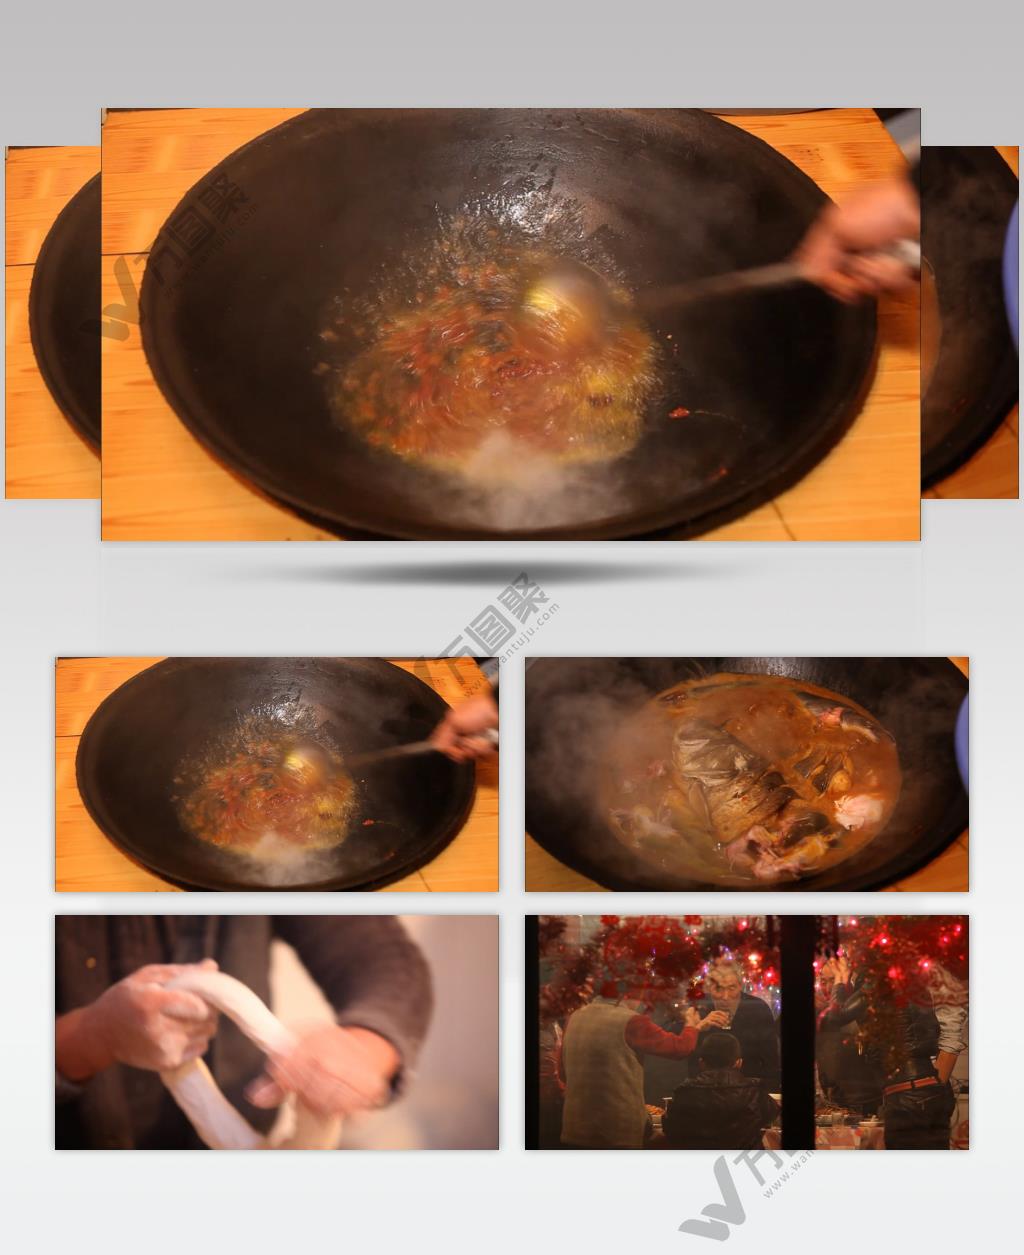 饭店酒楼吃饭聚餐美食火锅高清视频素材餐饮厨师食物厨房美食8